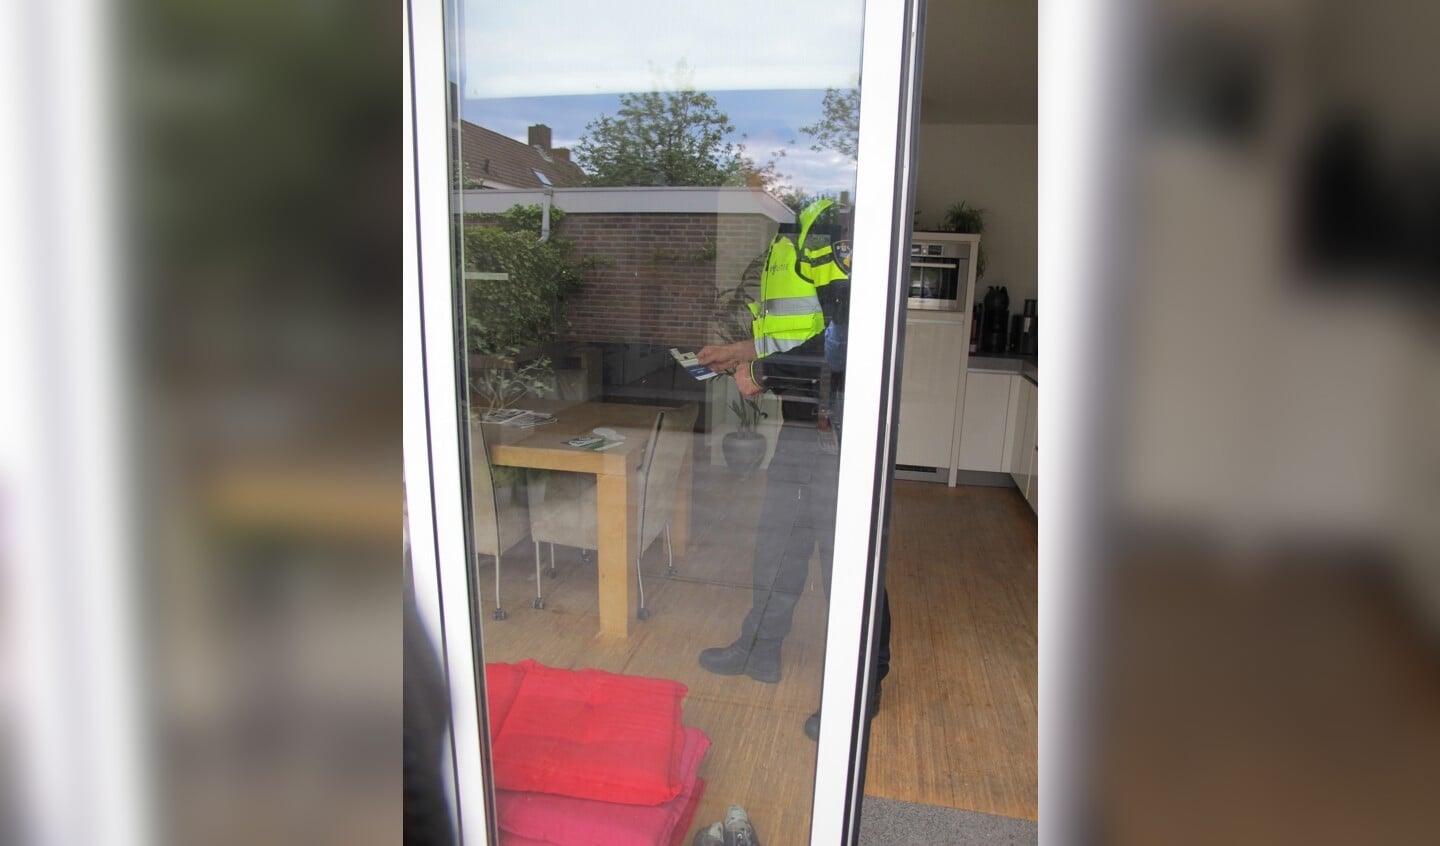 Een politieagent legt een ‘witte voetjes’-brochure in een woning waarvan de deur openstond. Bron: www.buurtpreventieheiloo.nl